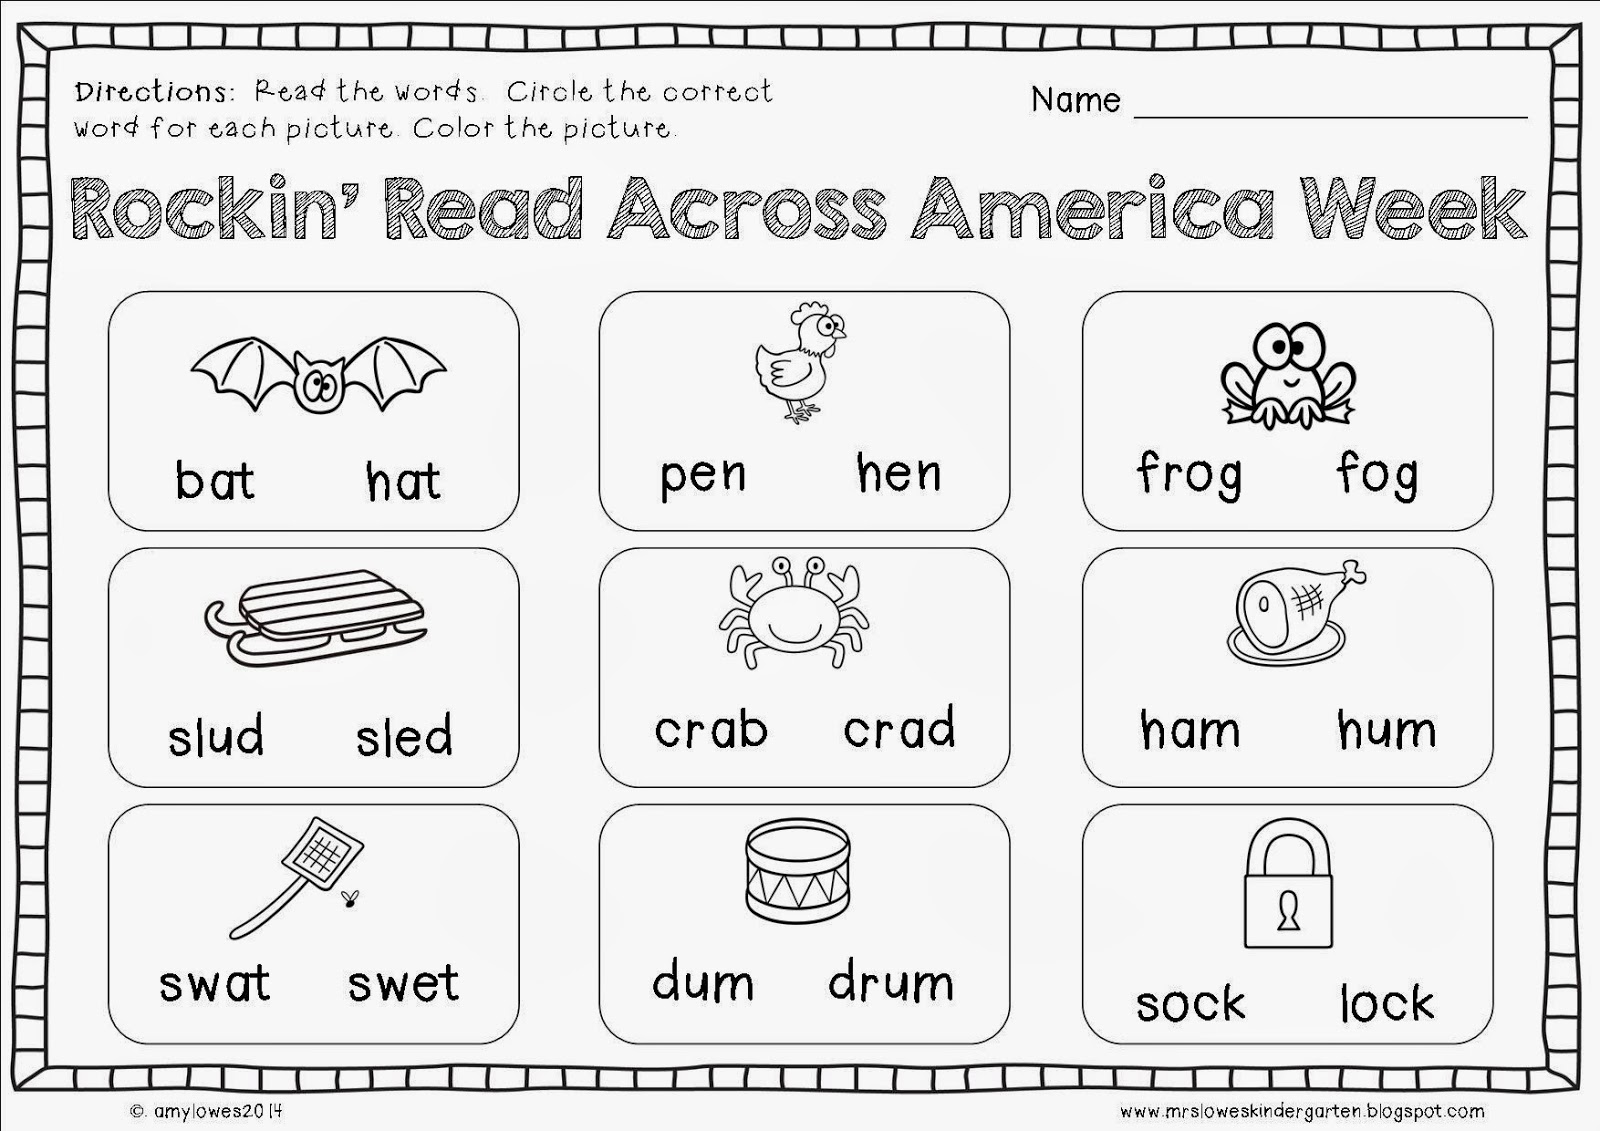 Mrs. Lowes' Kindergarten Korner Read Across America Week Activities